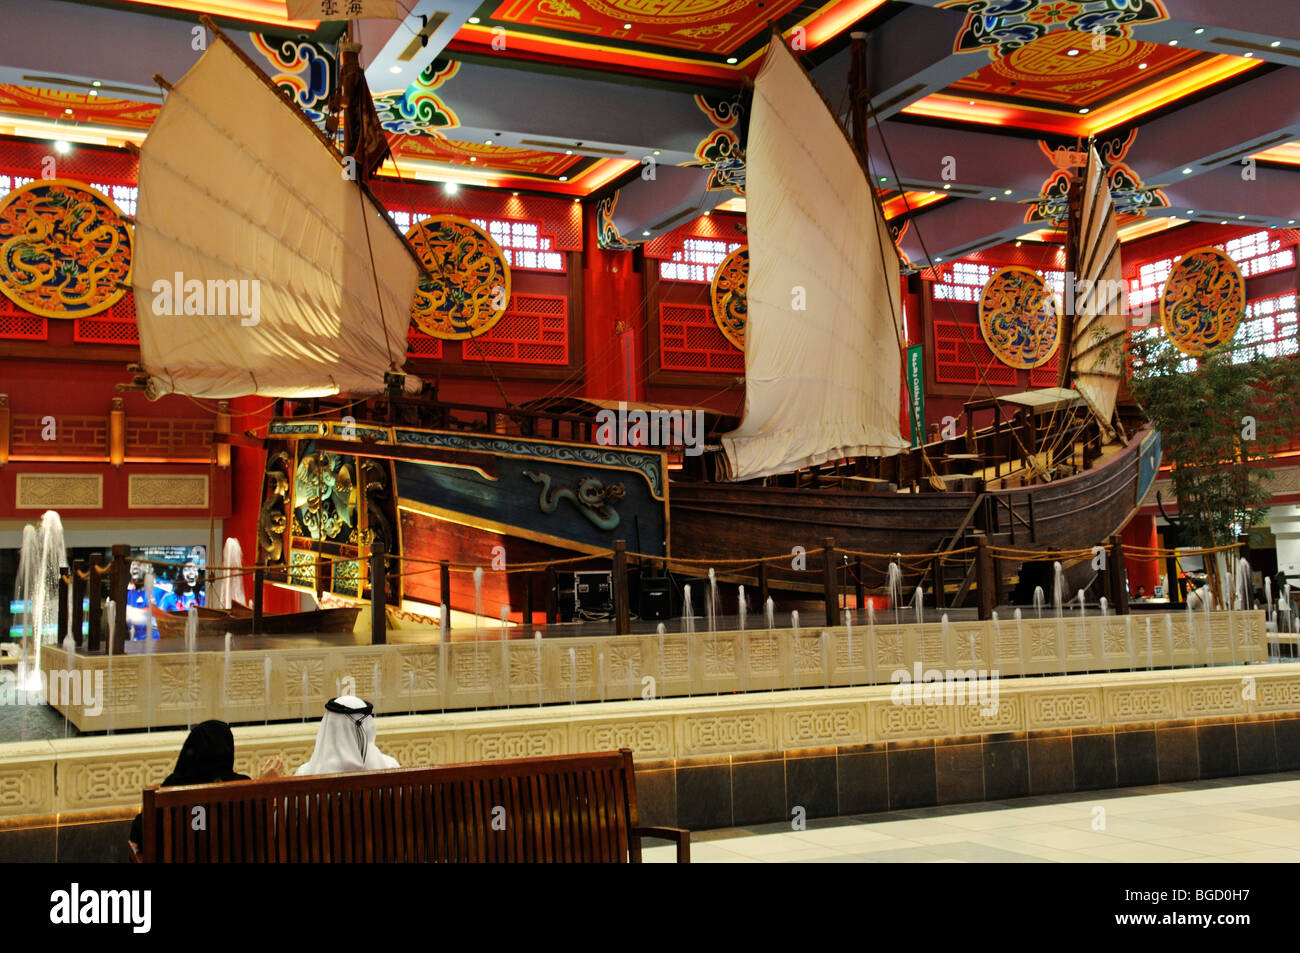 Ibn-Battuta Mall, Dubai, United Arab Emirates, Middle East Stock Photo